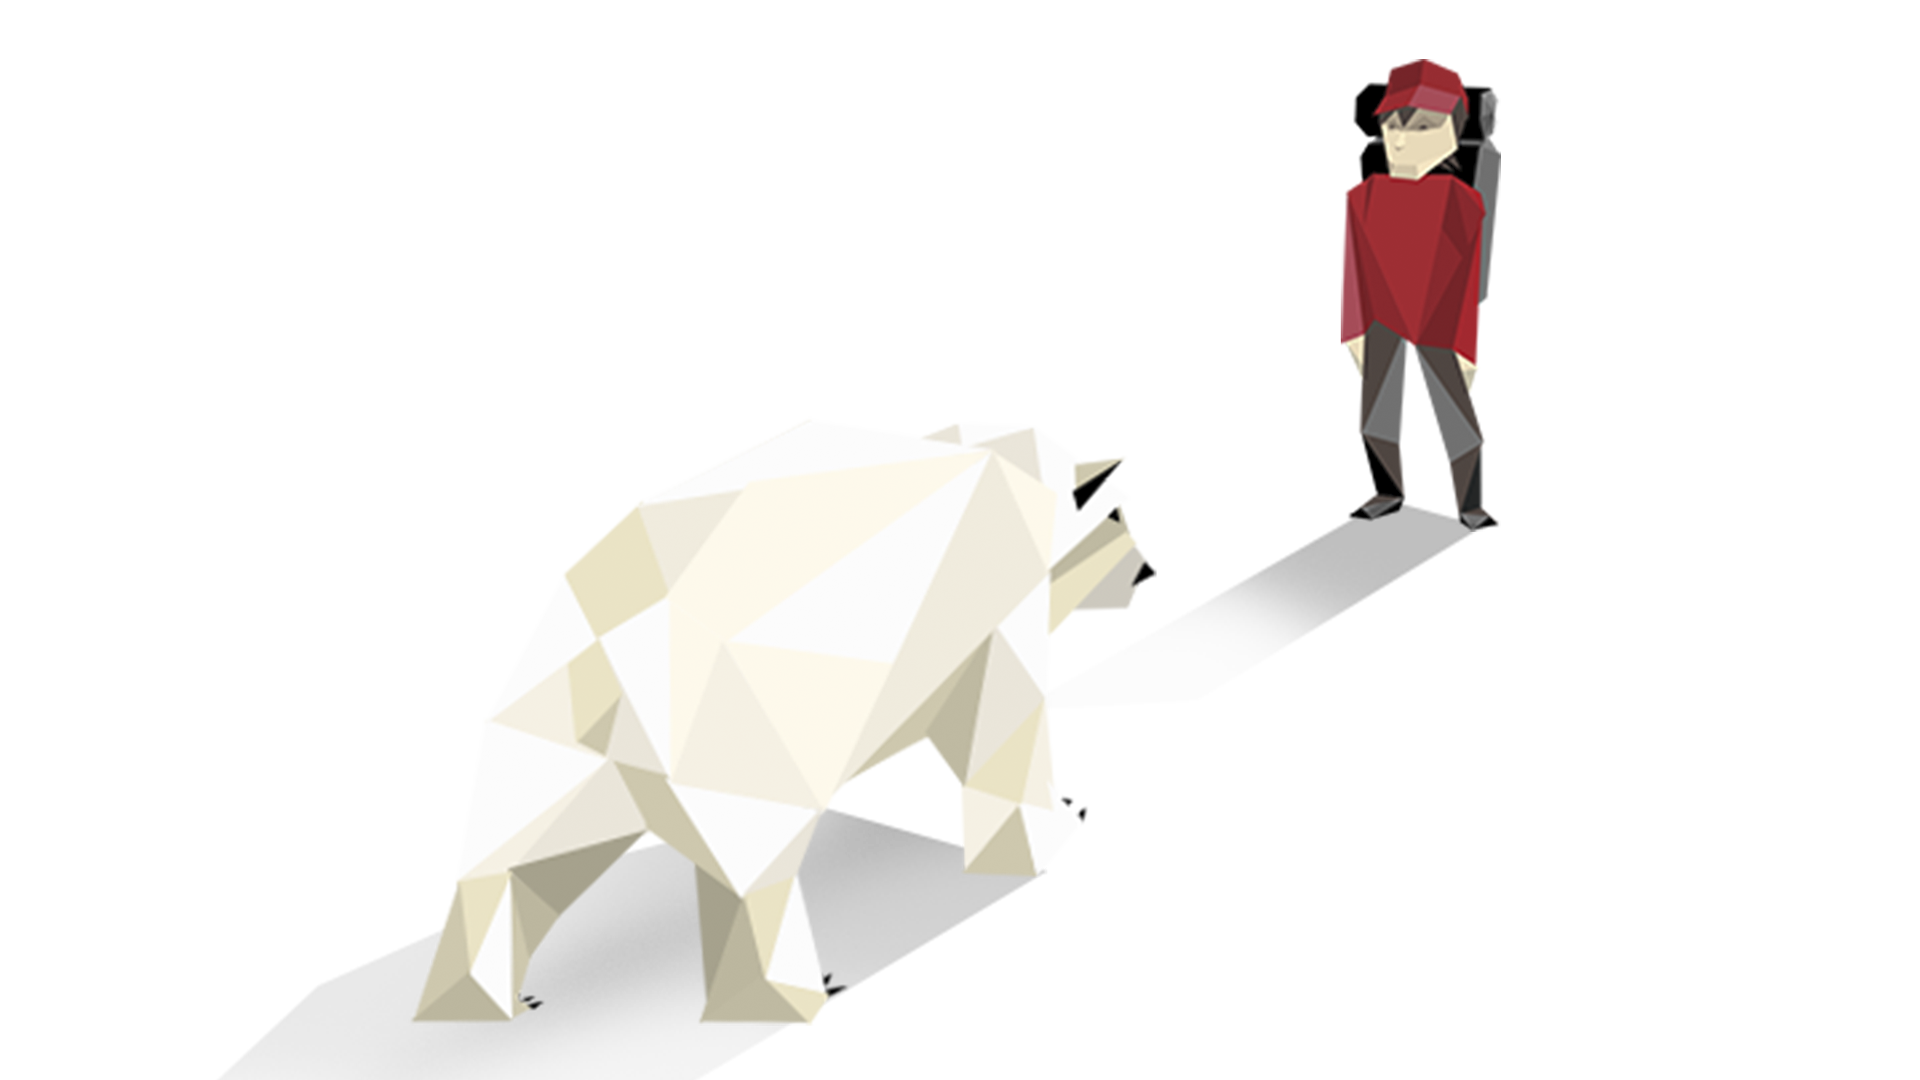 Encountering polar bear